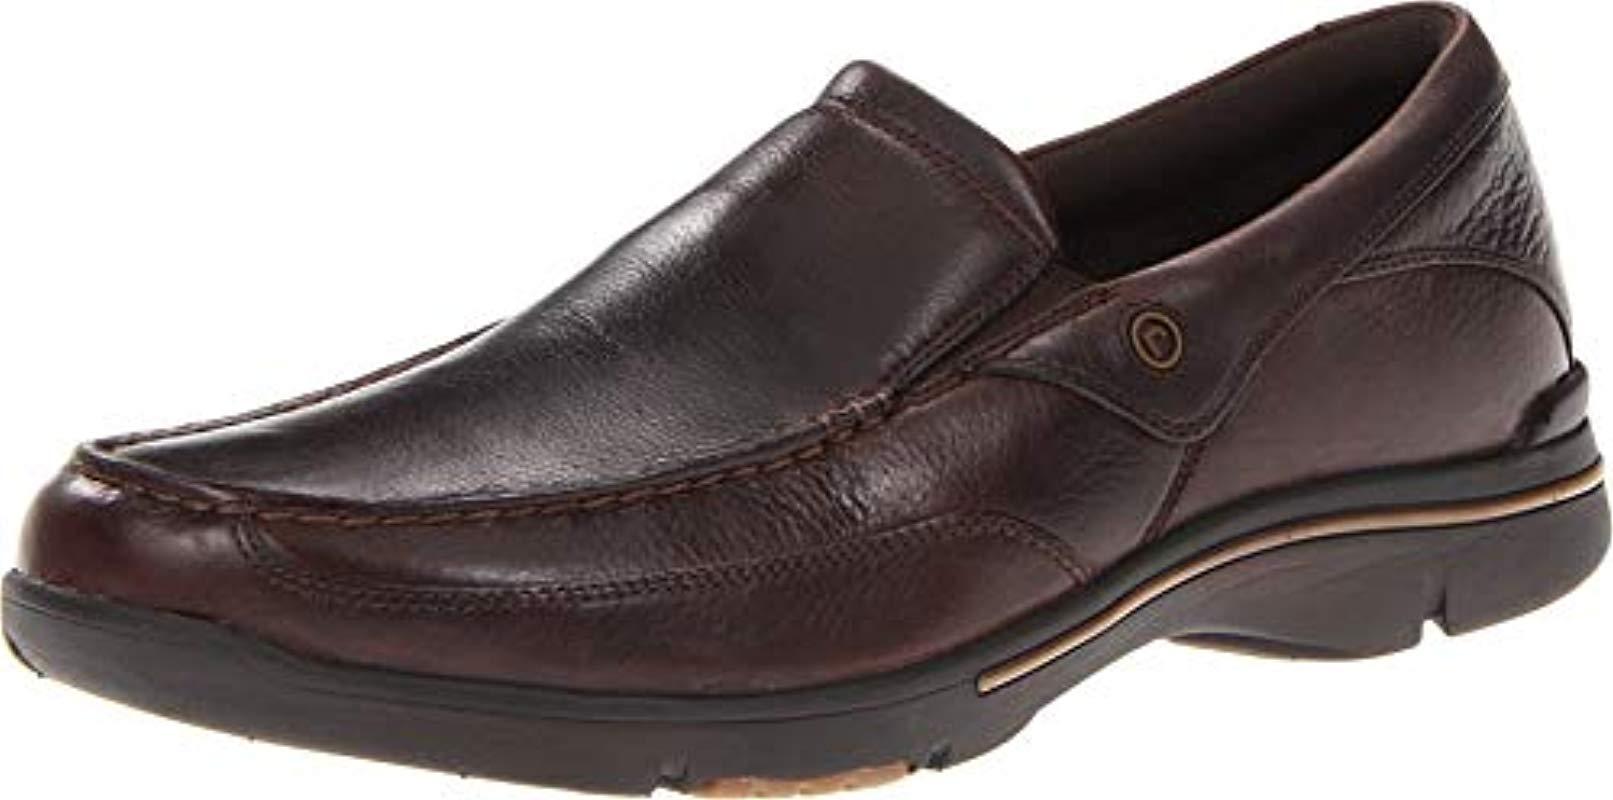 Rockport Leather Eberdon Loafer in Dark Brown (Brown) for Men - Save 14 ...